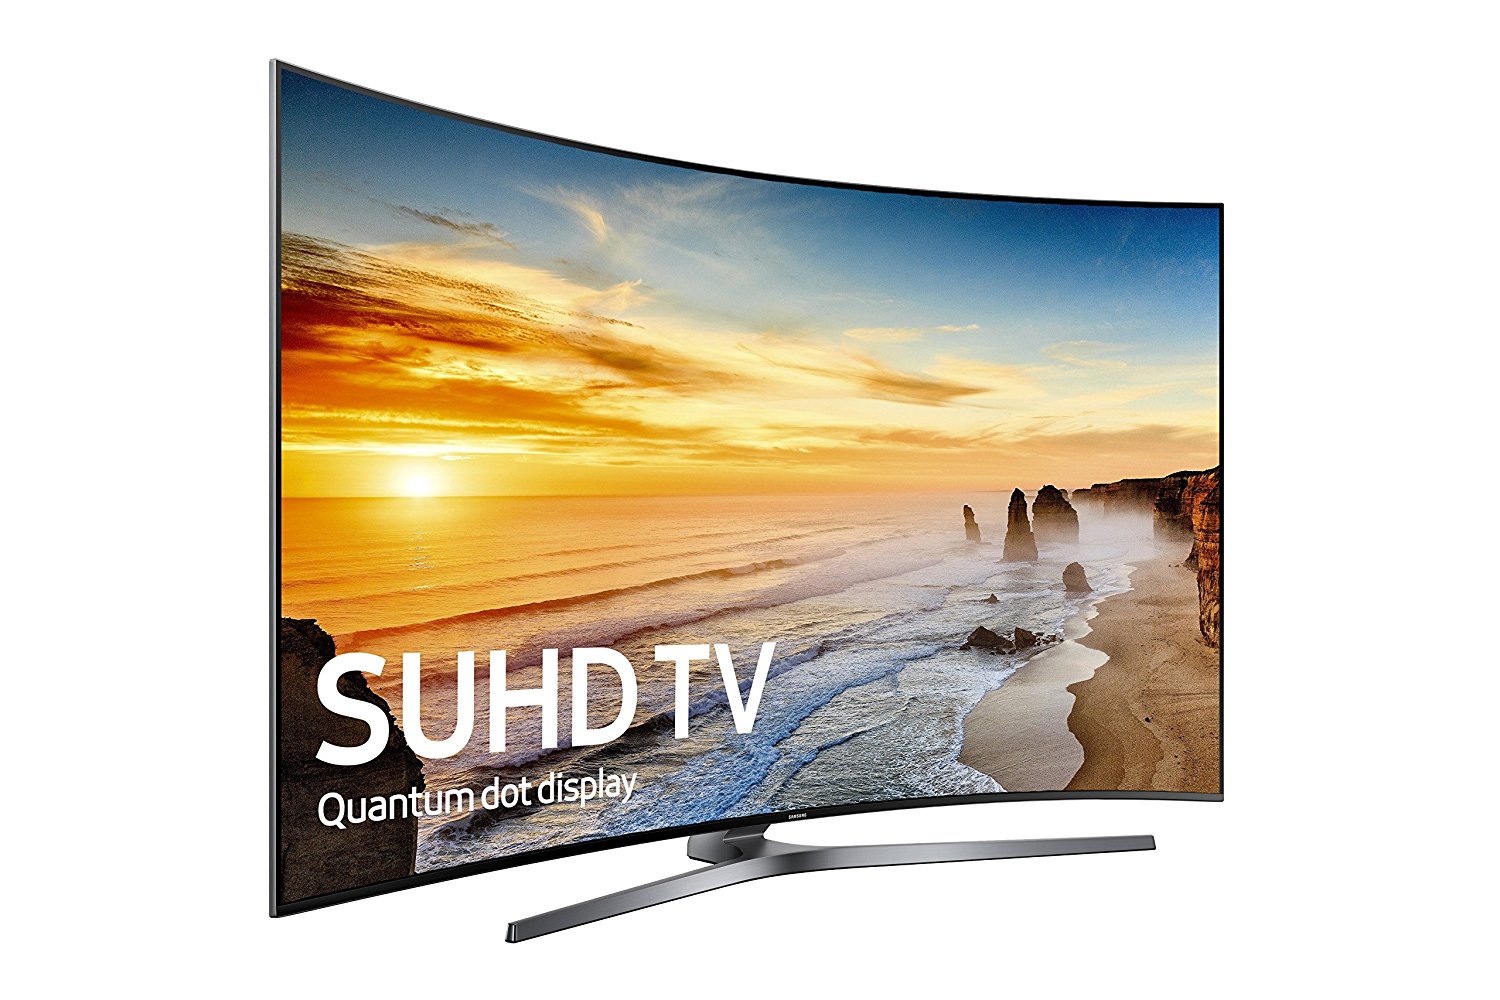 Samsung Un65ks9800 Curved 65 Inch 4k Ultra Hd Smart Led Tv 2016 Model N2 Free Image Download 9848